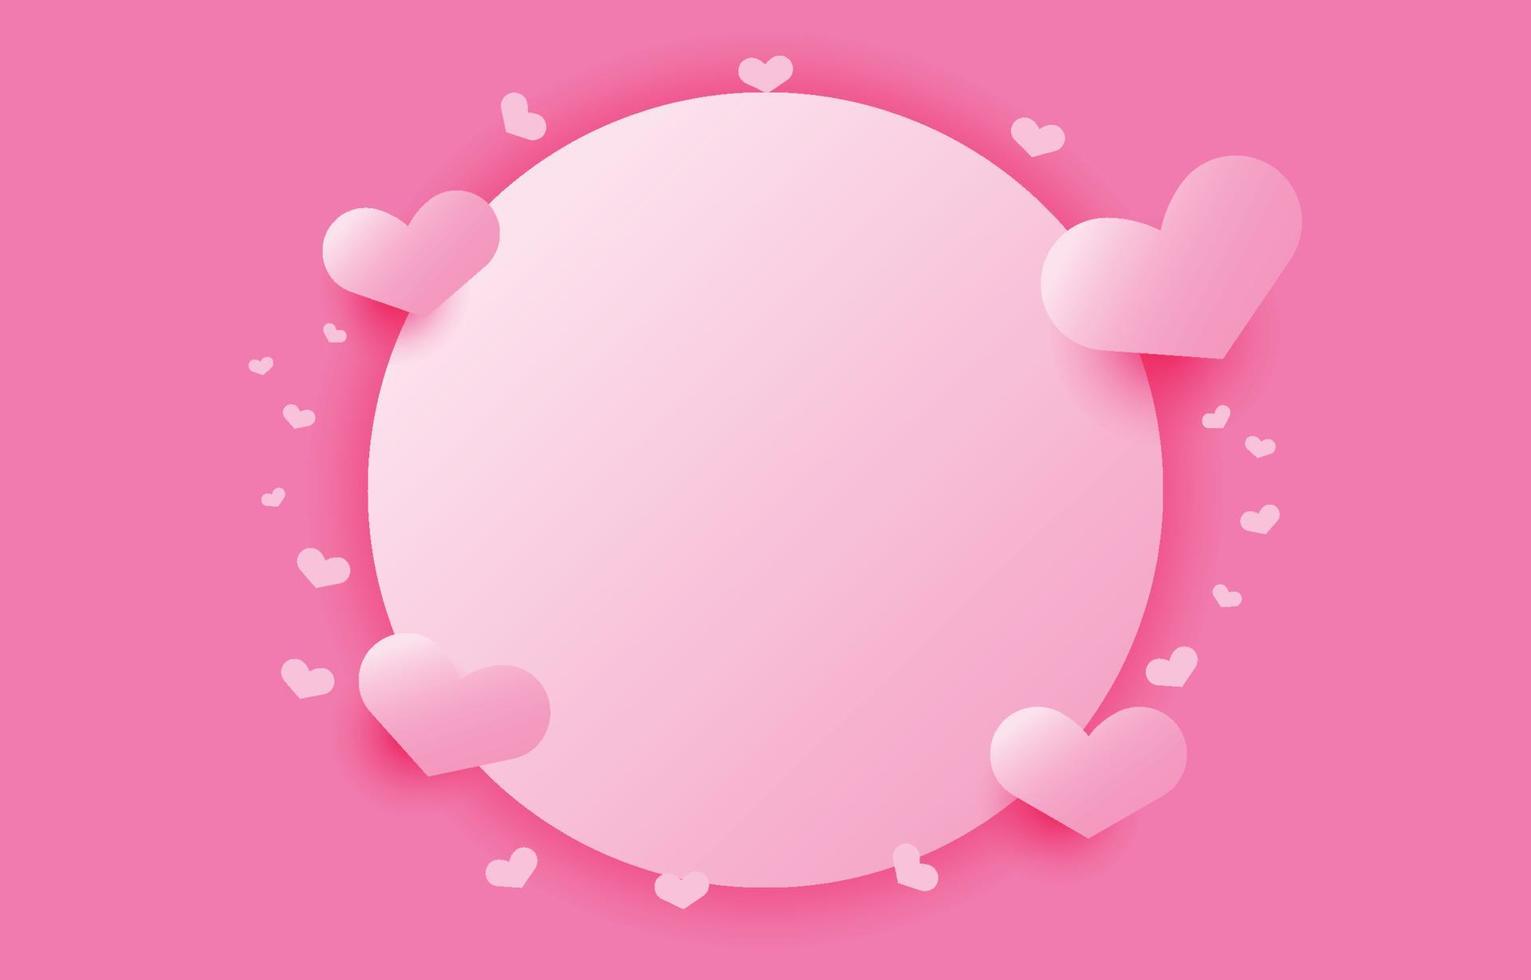 cadre de fond de cercle décoré de coeurs roses vifs, concept de la saint-valentin, couple, fête des mères, vecteur d'illustration de papier peint d'amour espace libre.